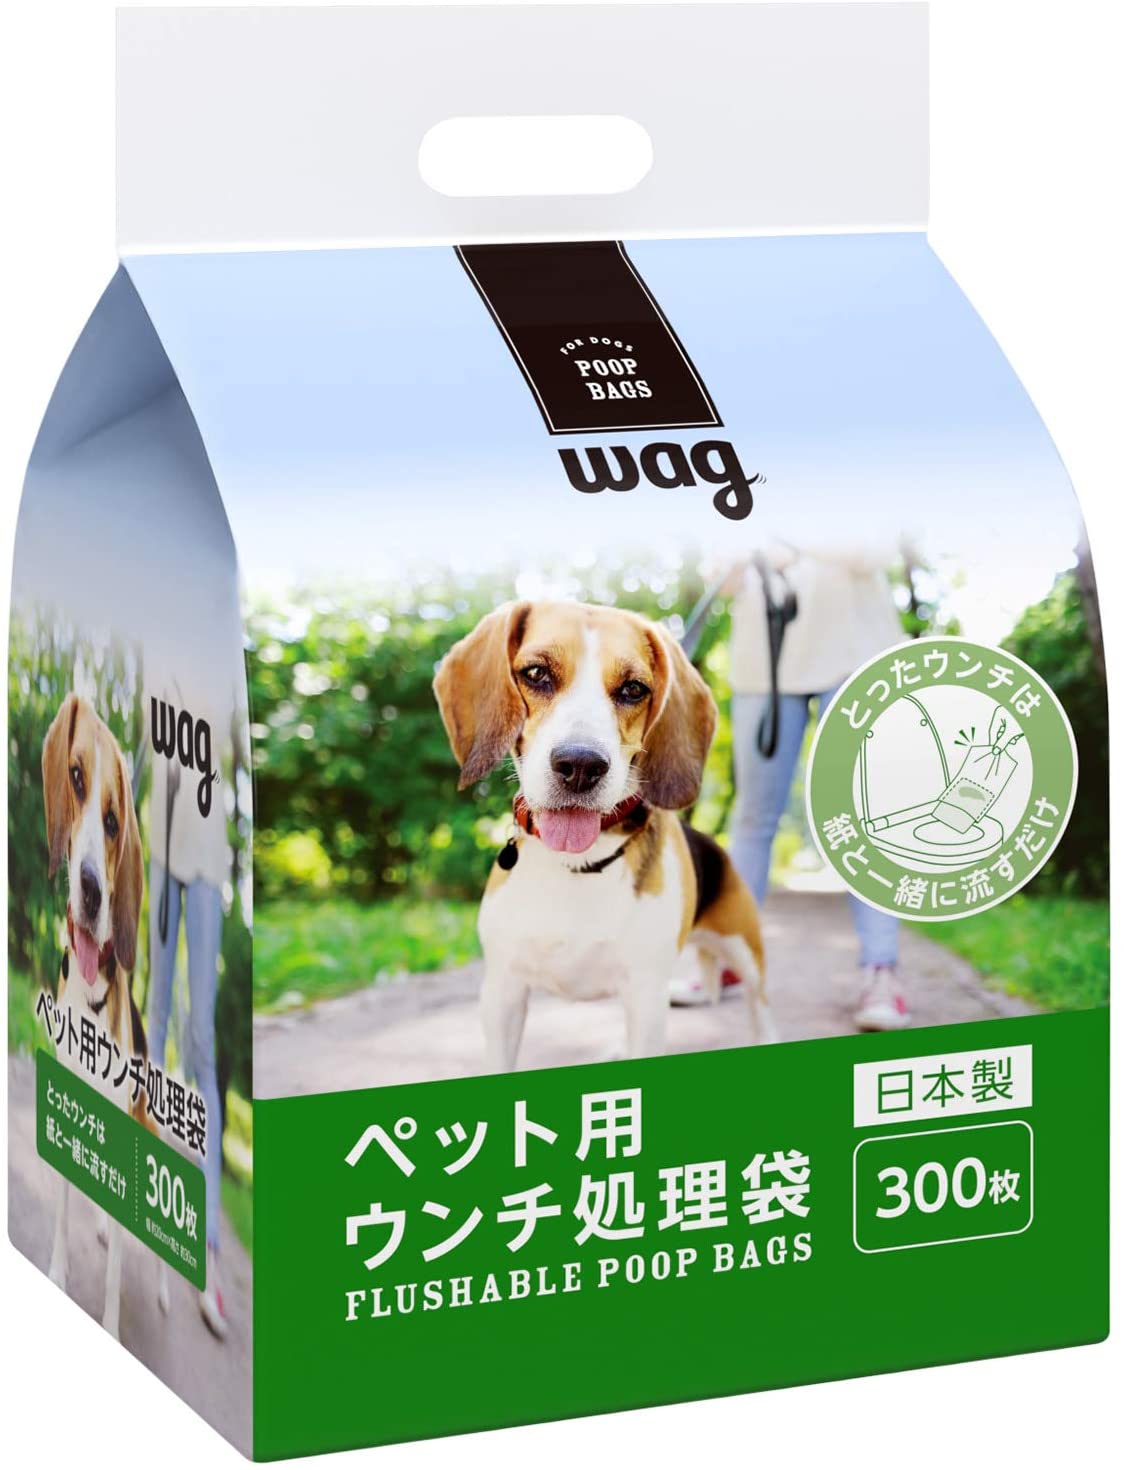 [Amazonブランド] 犬用 ウンチ処理袋 300枚 (トイレに流せる)